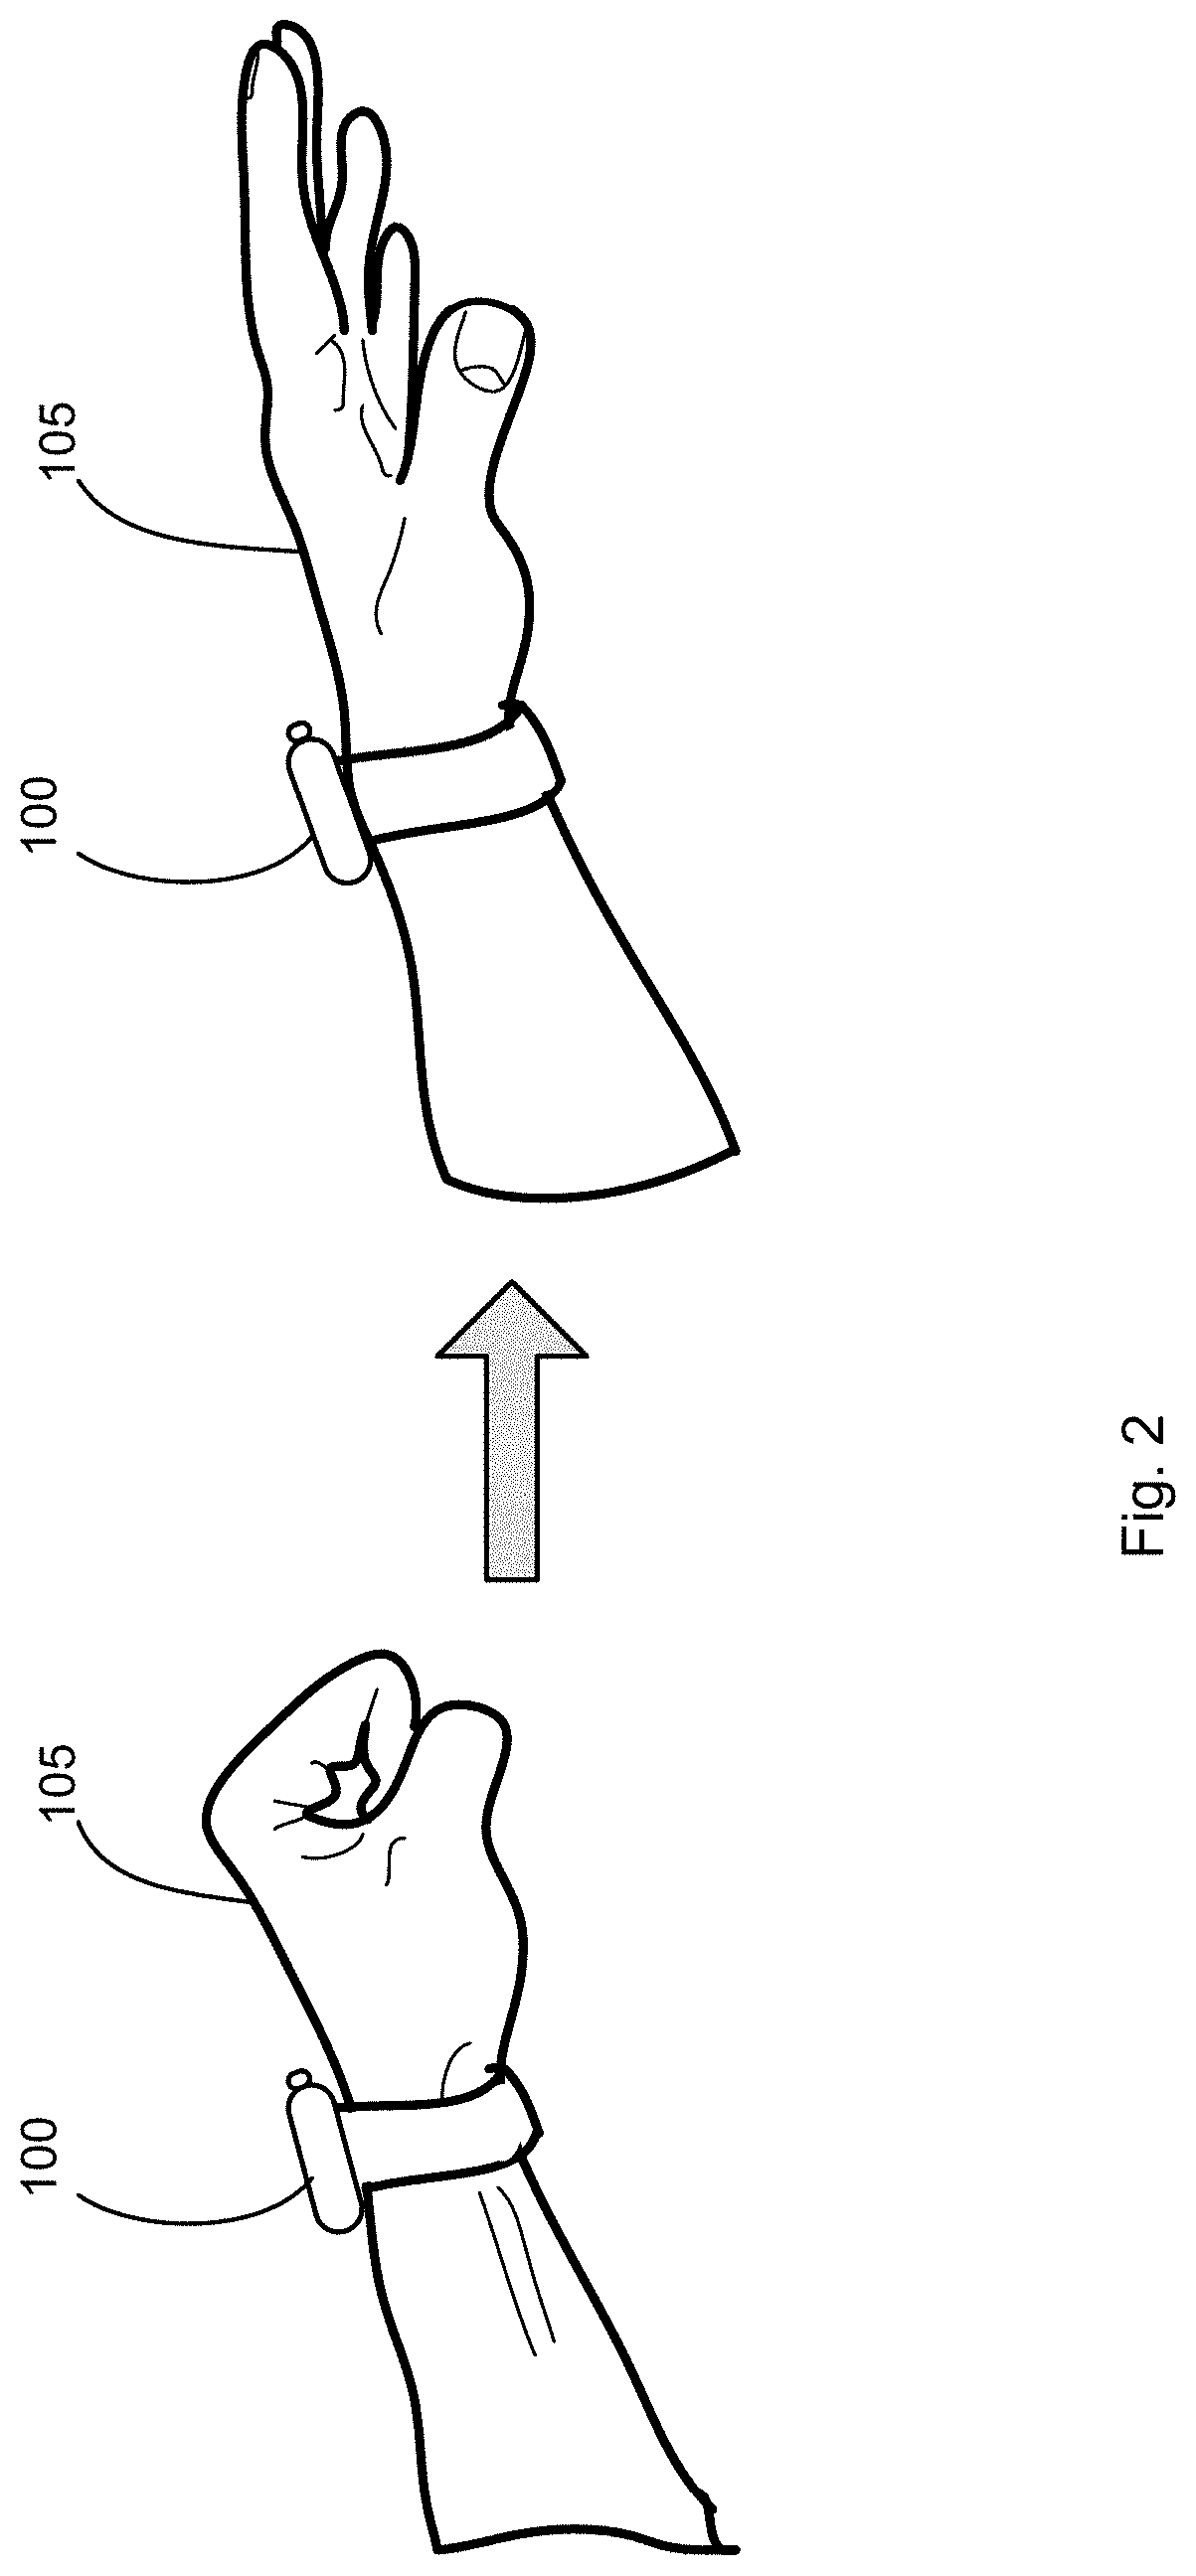 Sensing Hand Gestures Using Optical Sensors